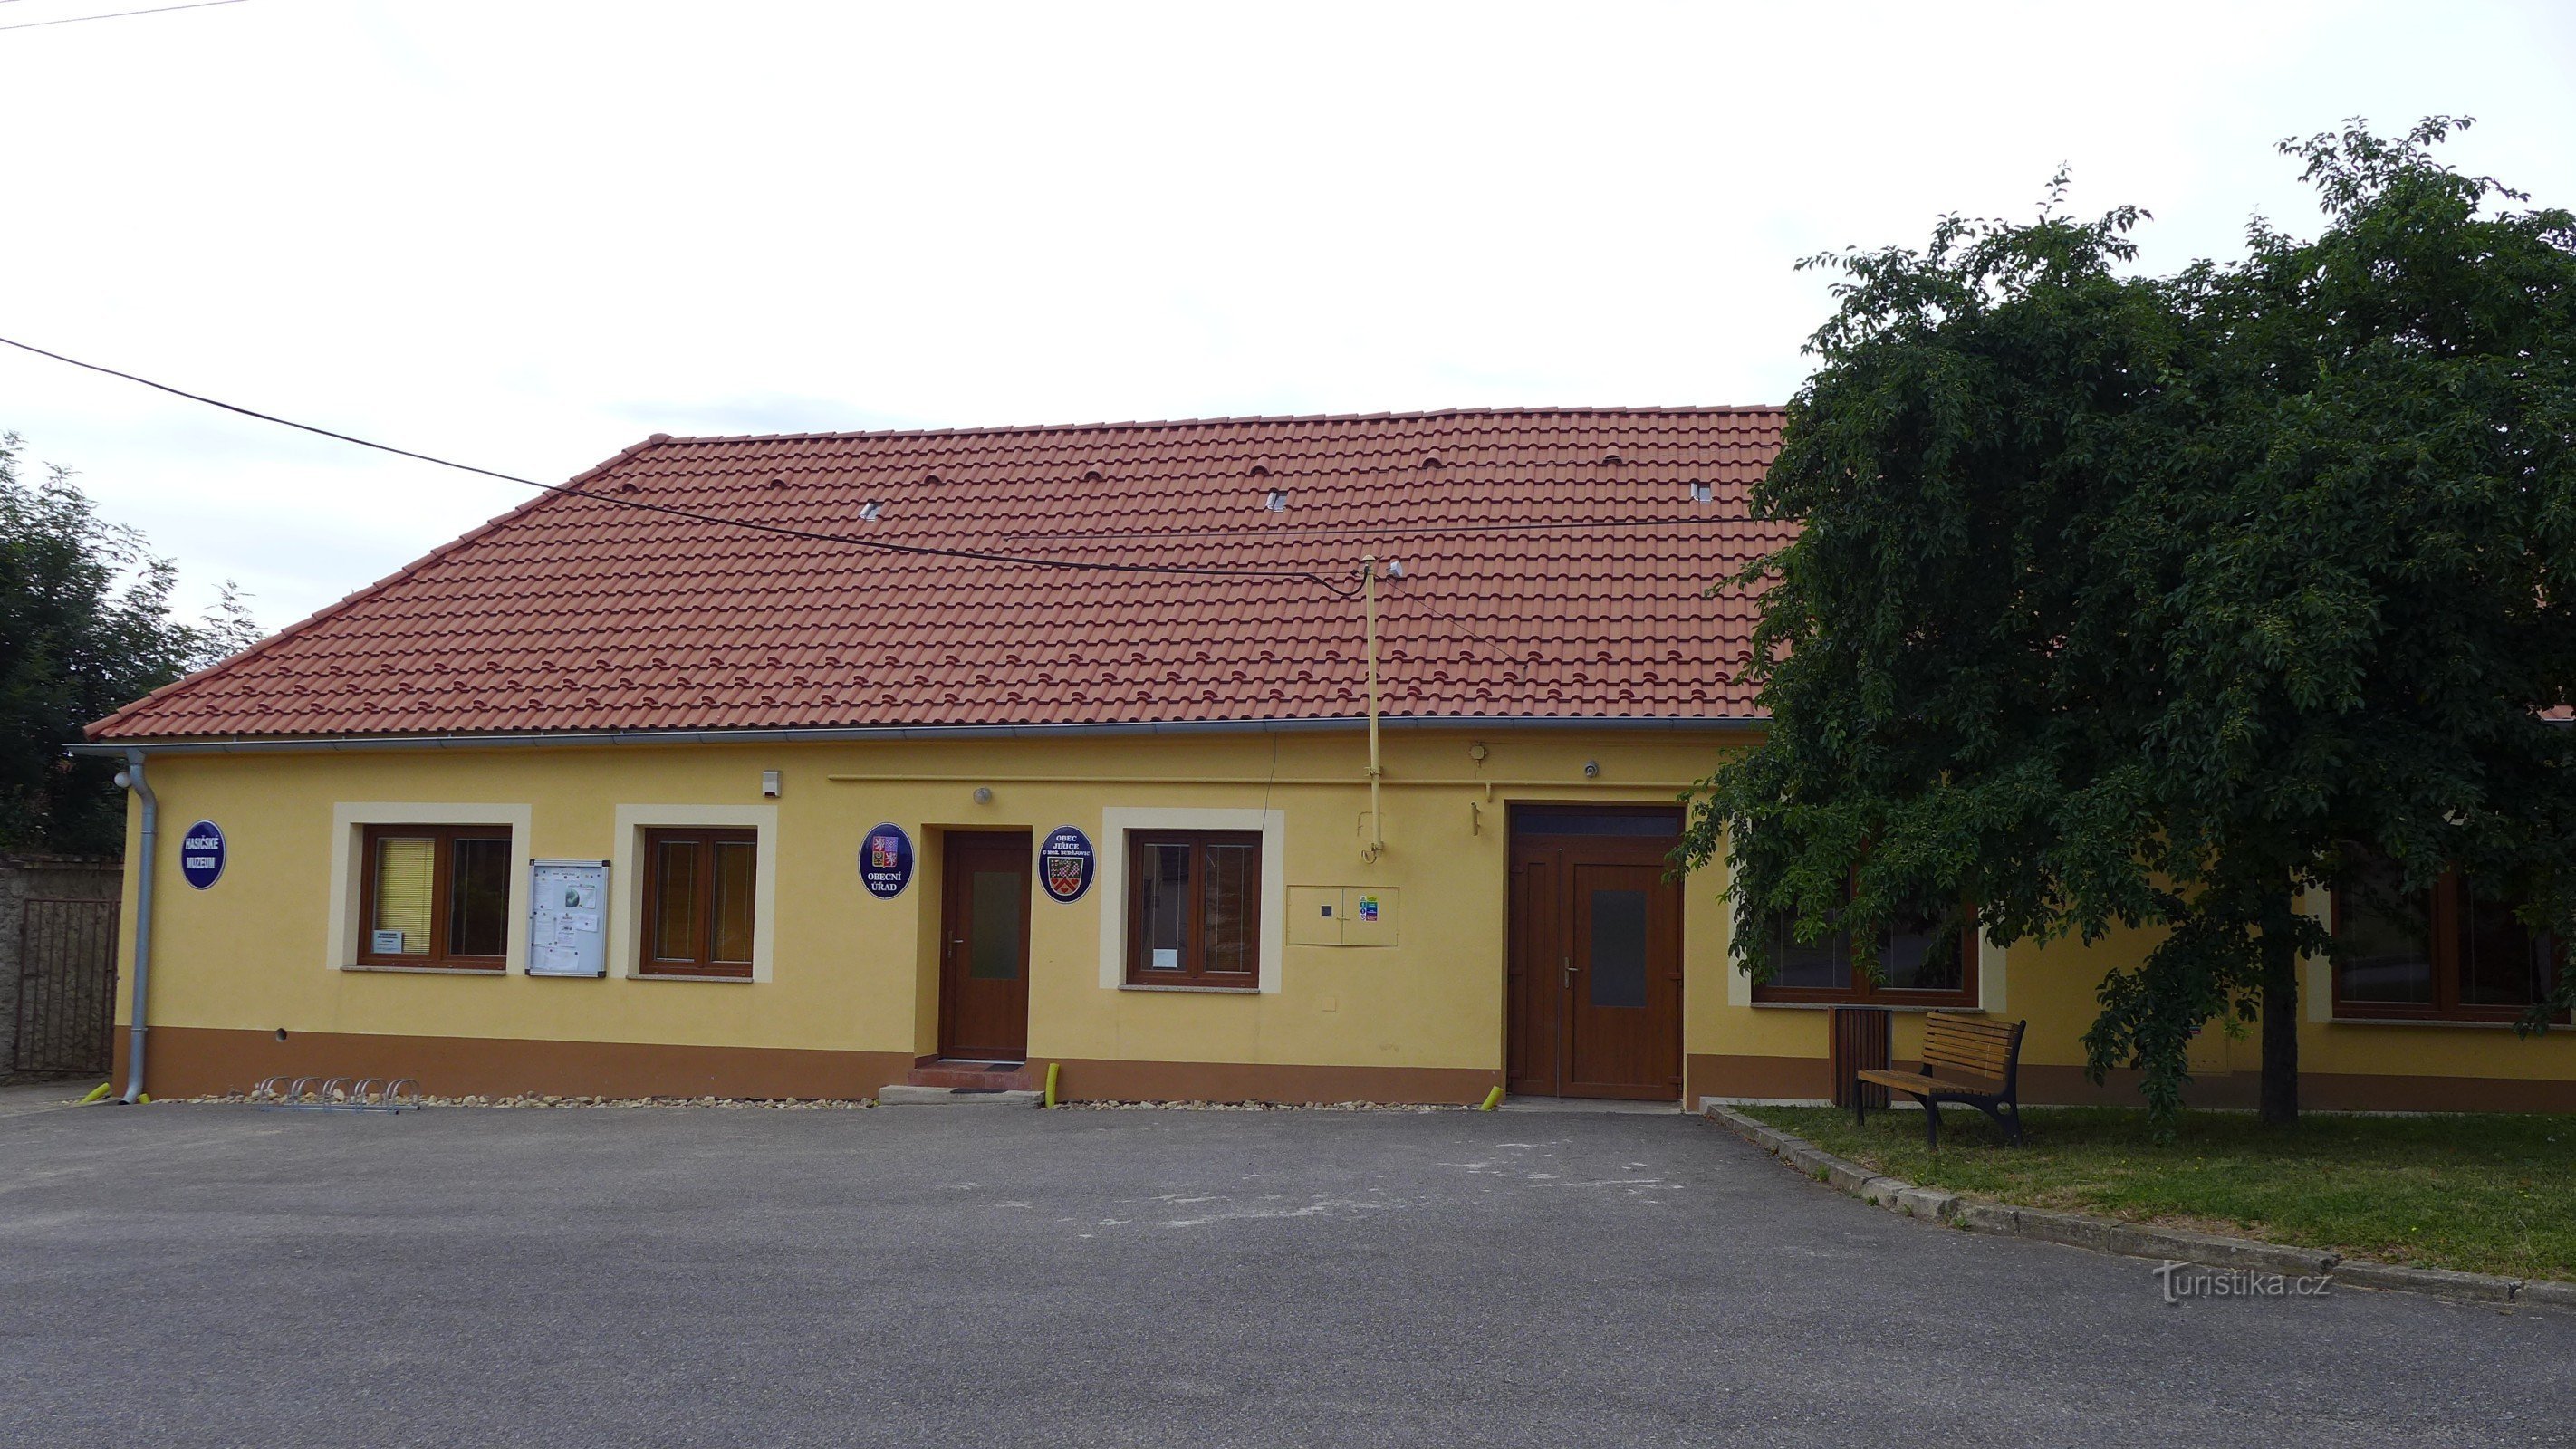 Jiřice Moravské Budějovice közelében: önkormányzati hivatal